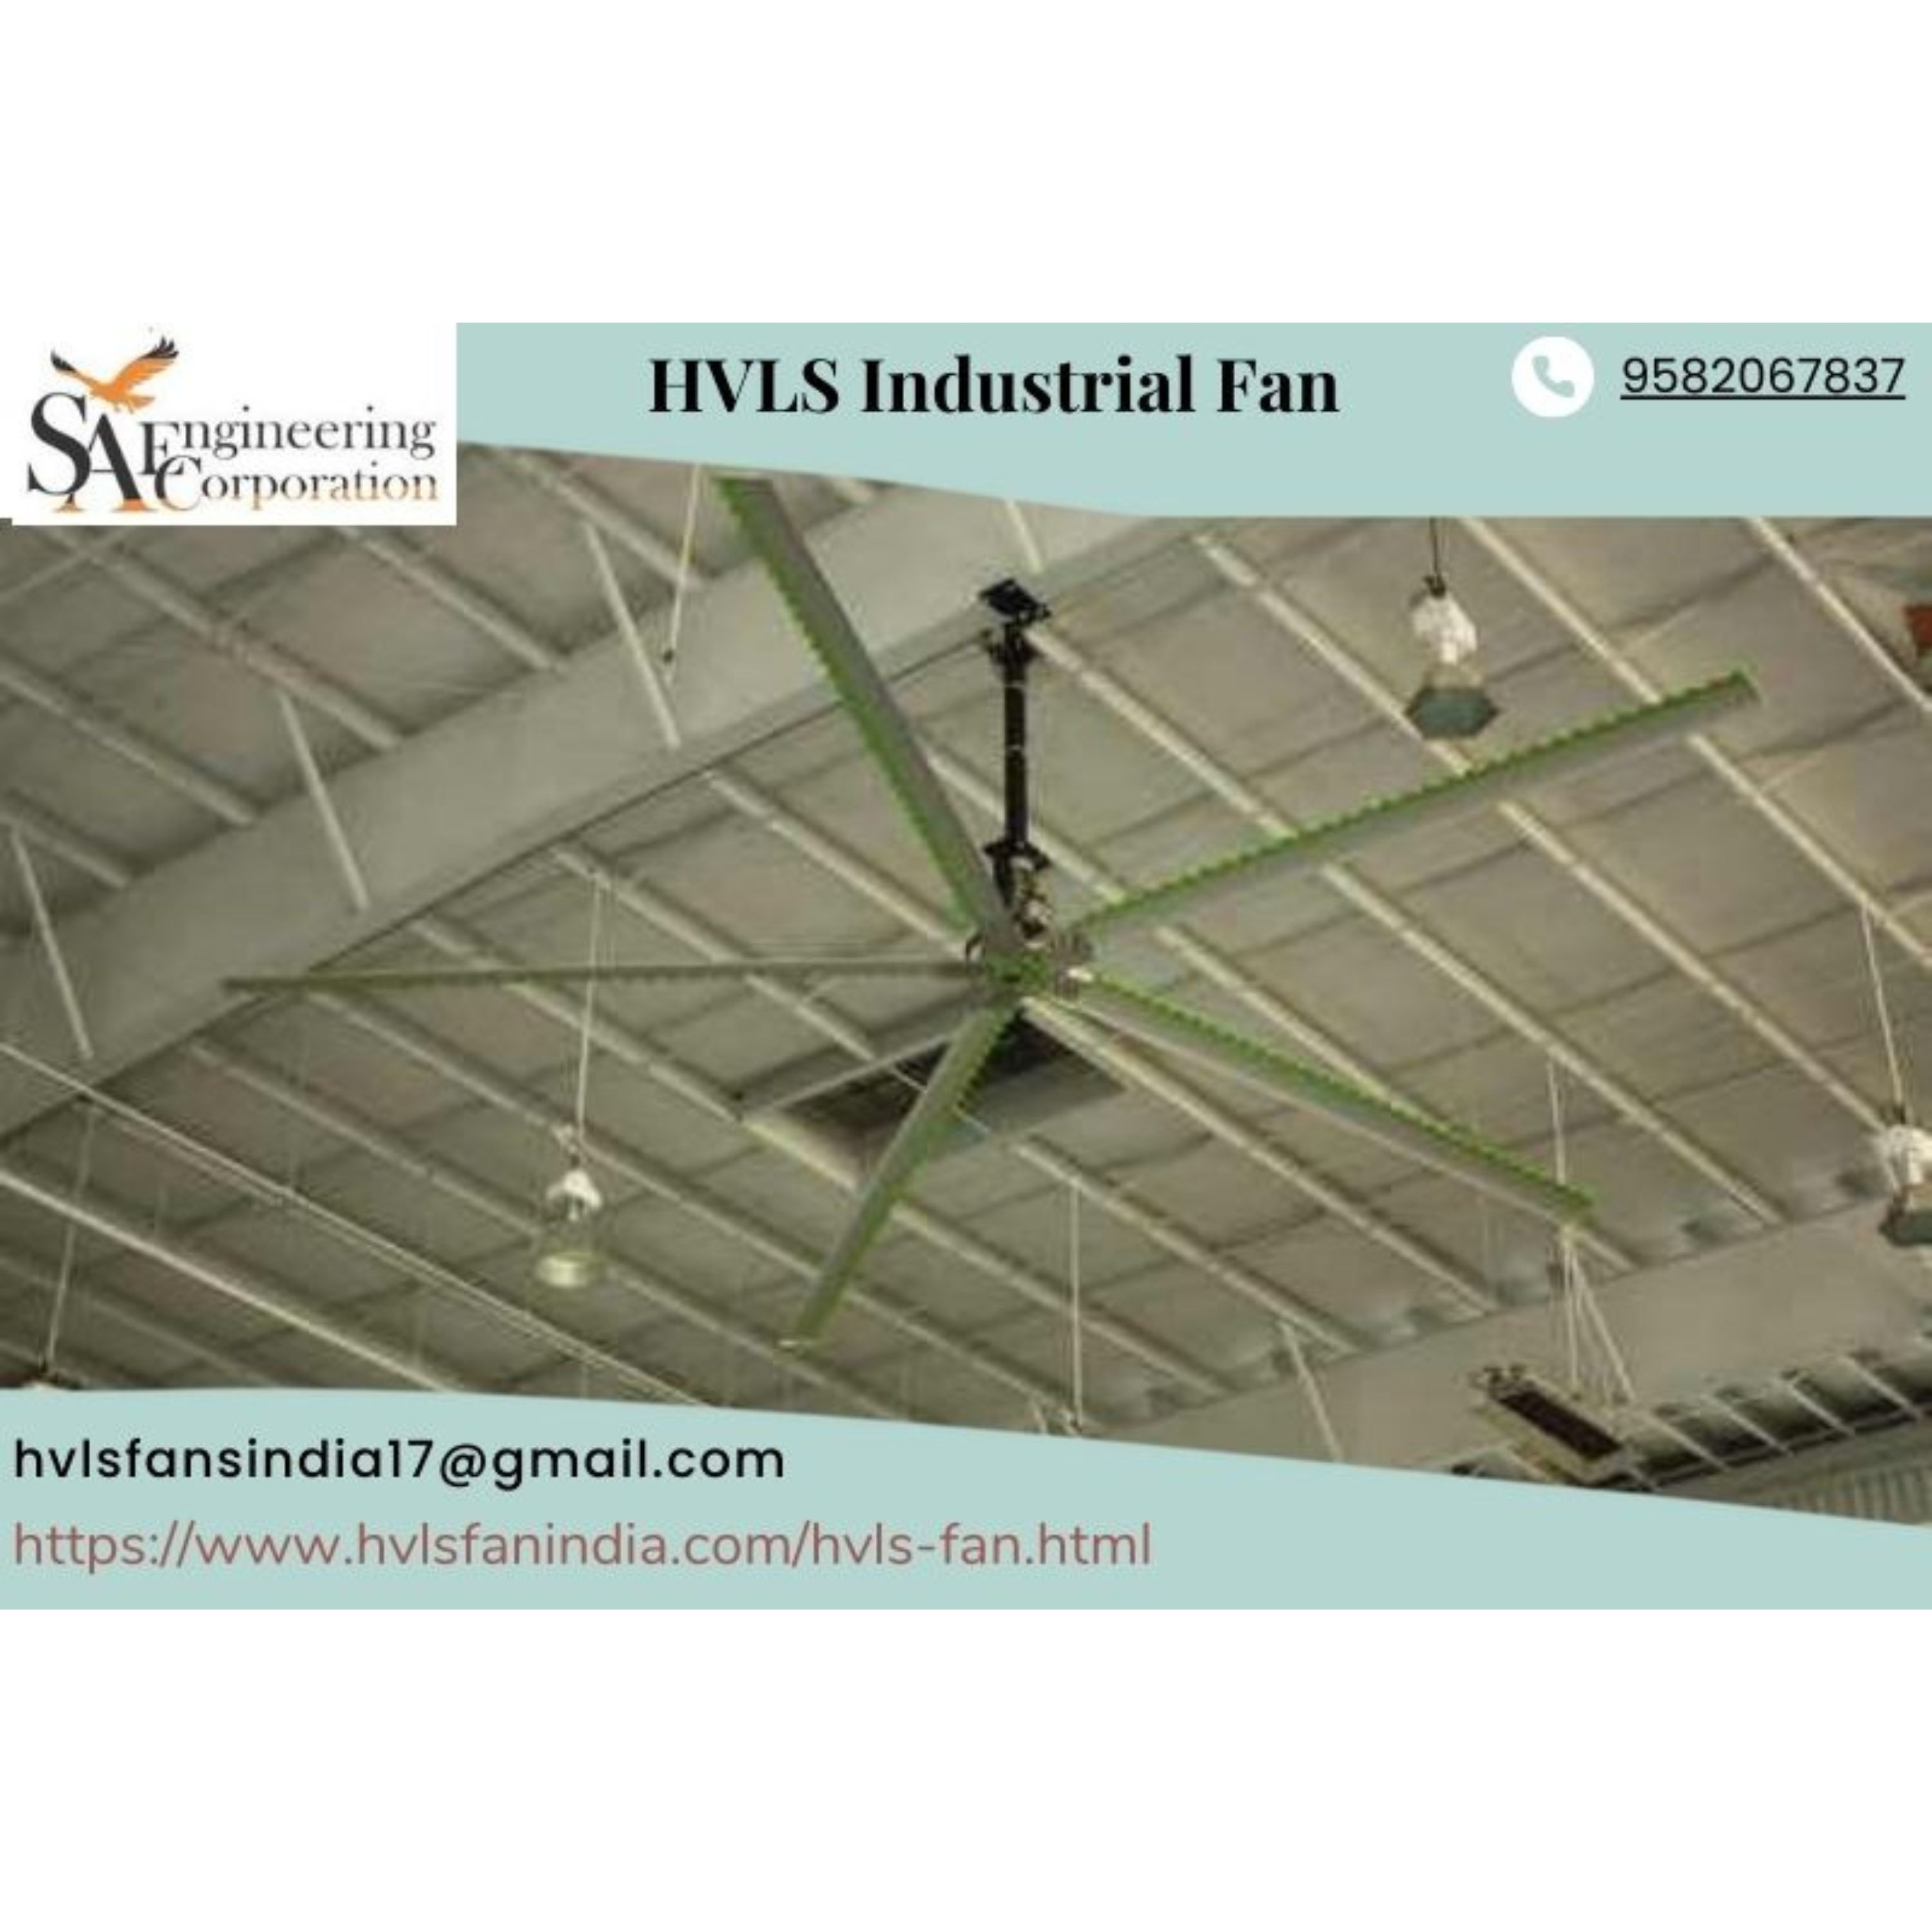  HVLS Industrial Fan